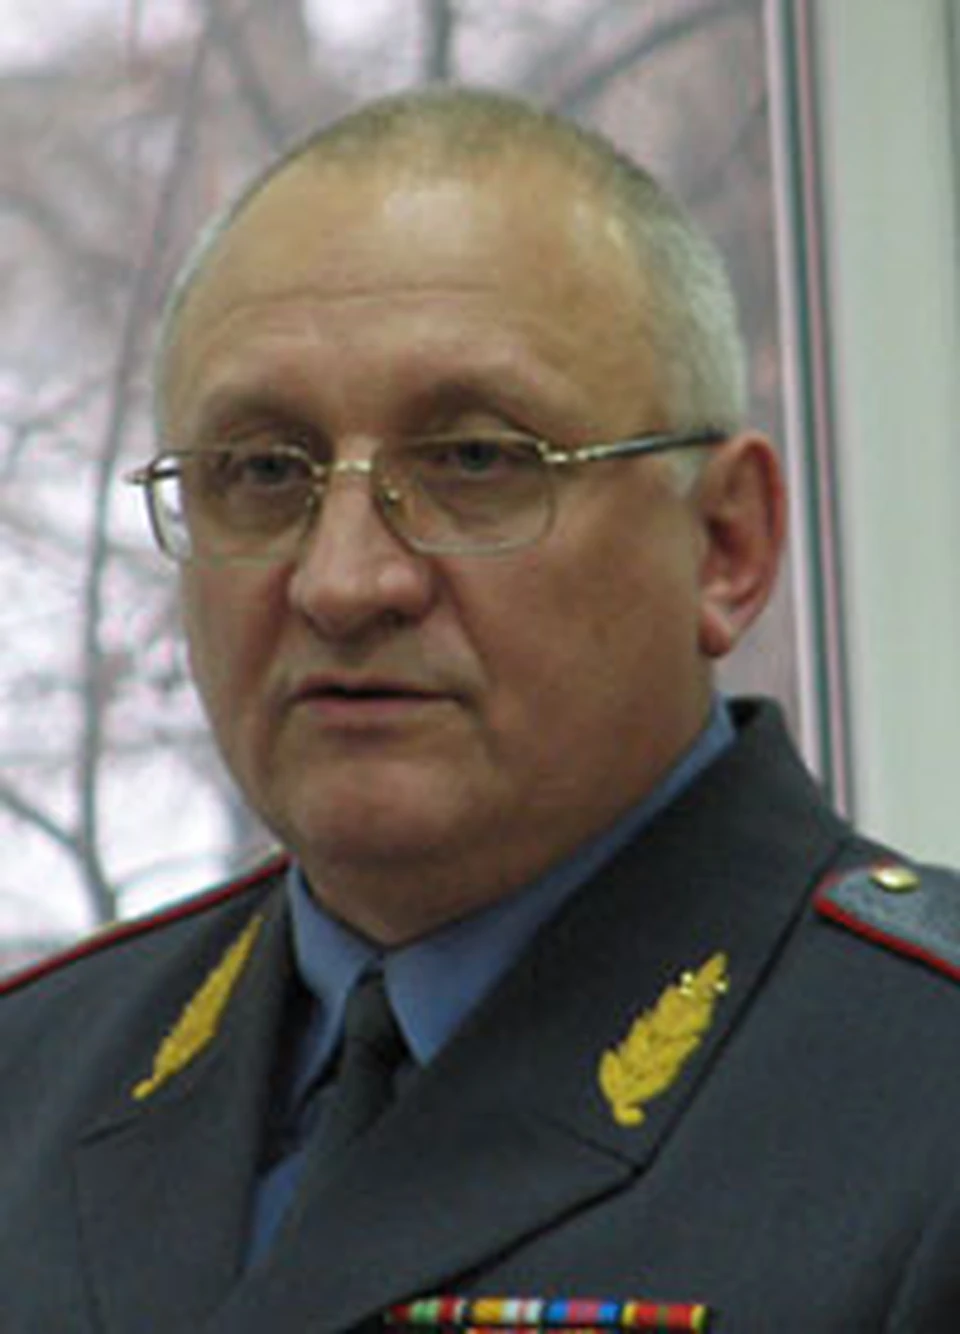 Бакаев Анатолий Александрович